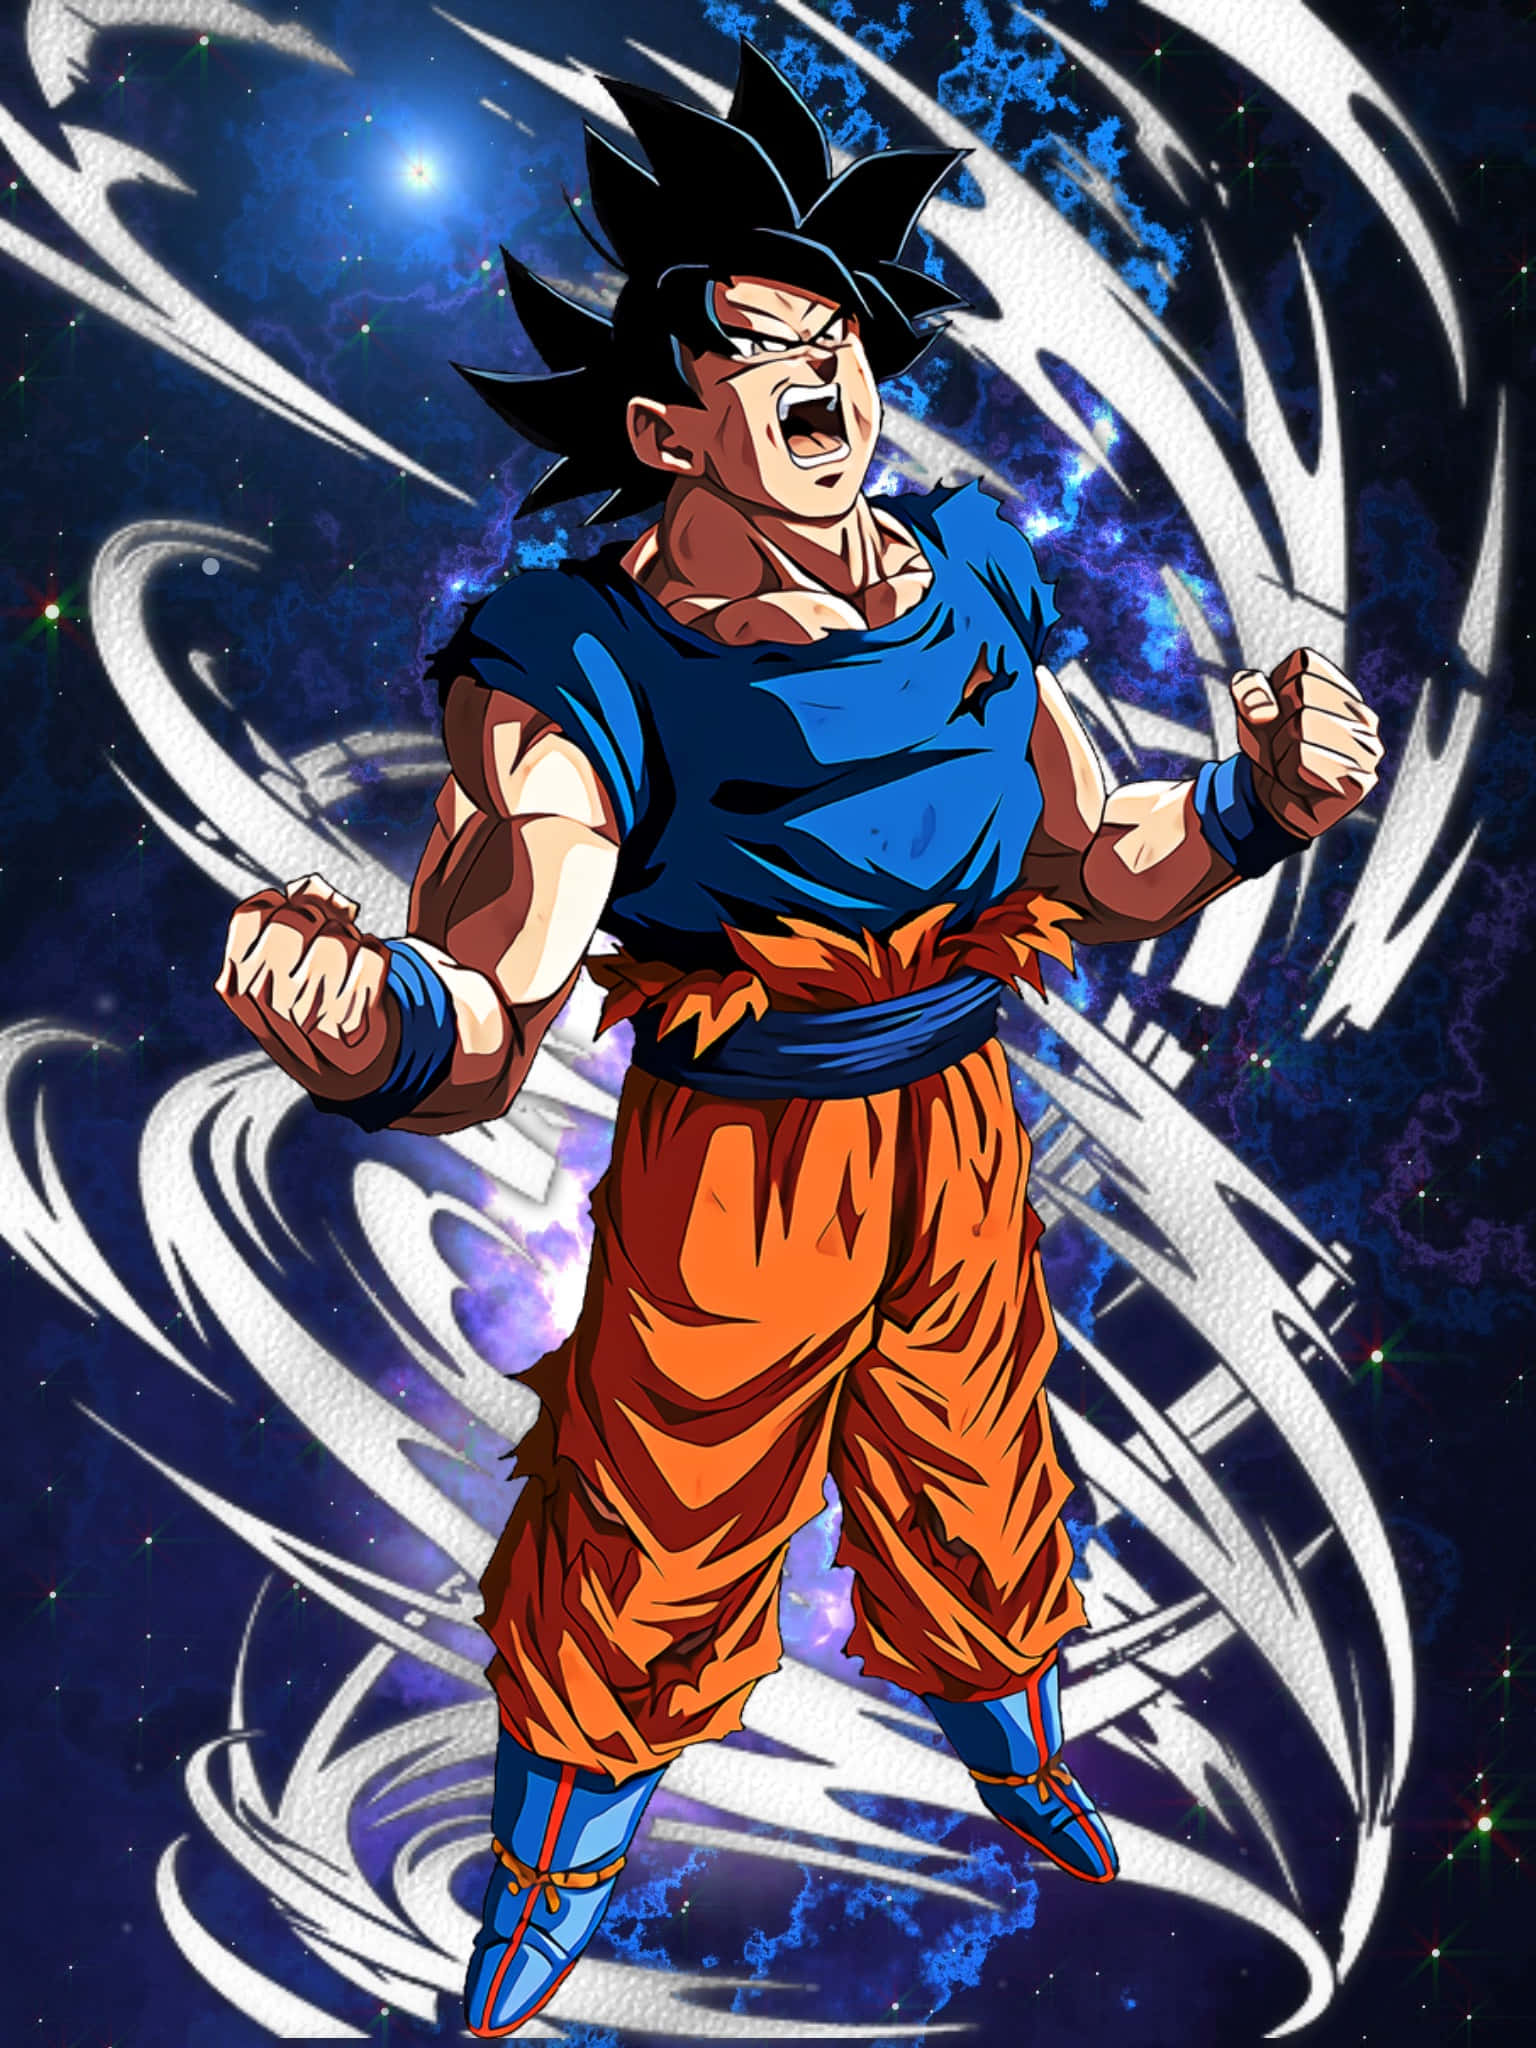 Unleashing Ki and Power in "MUI Goku" Wallpaper